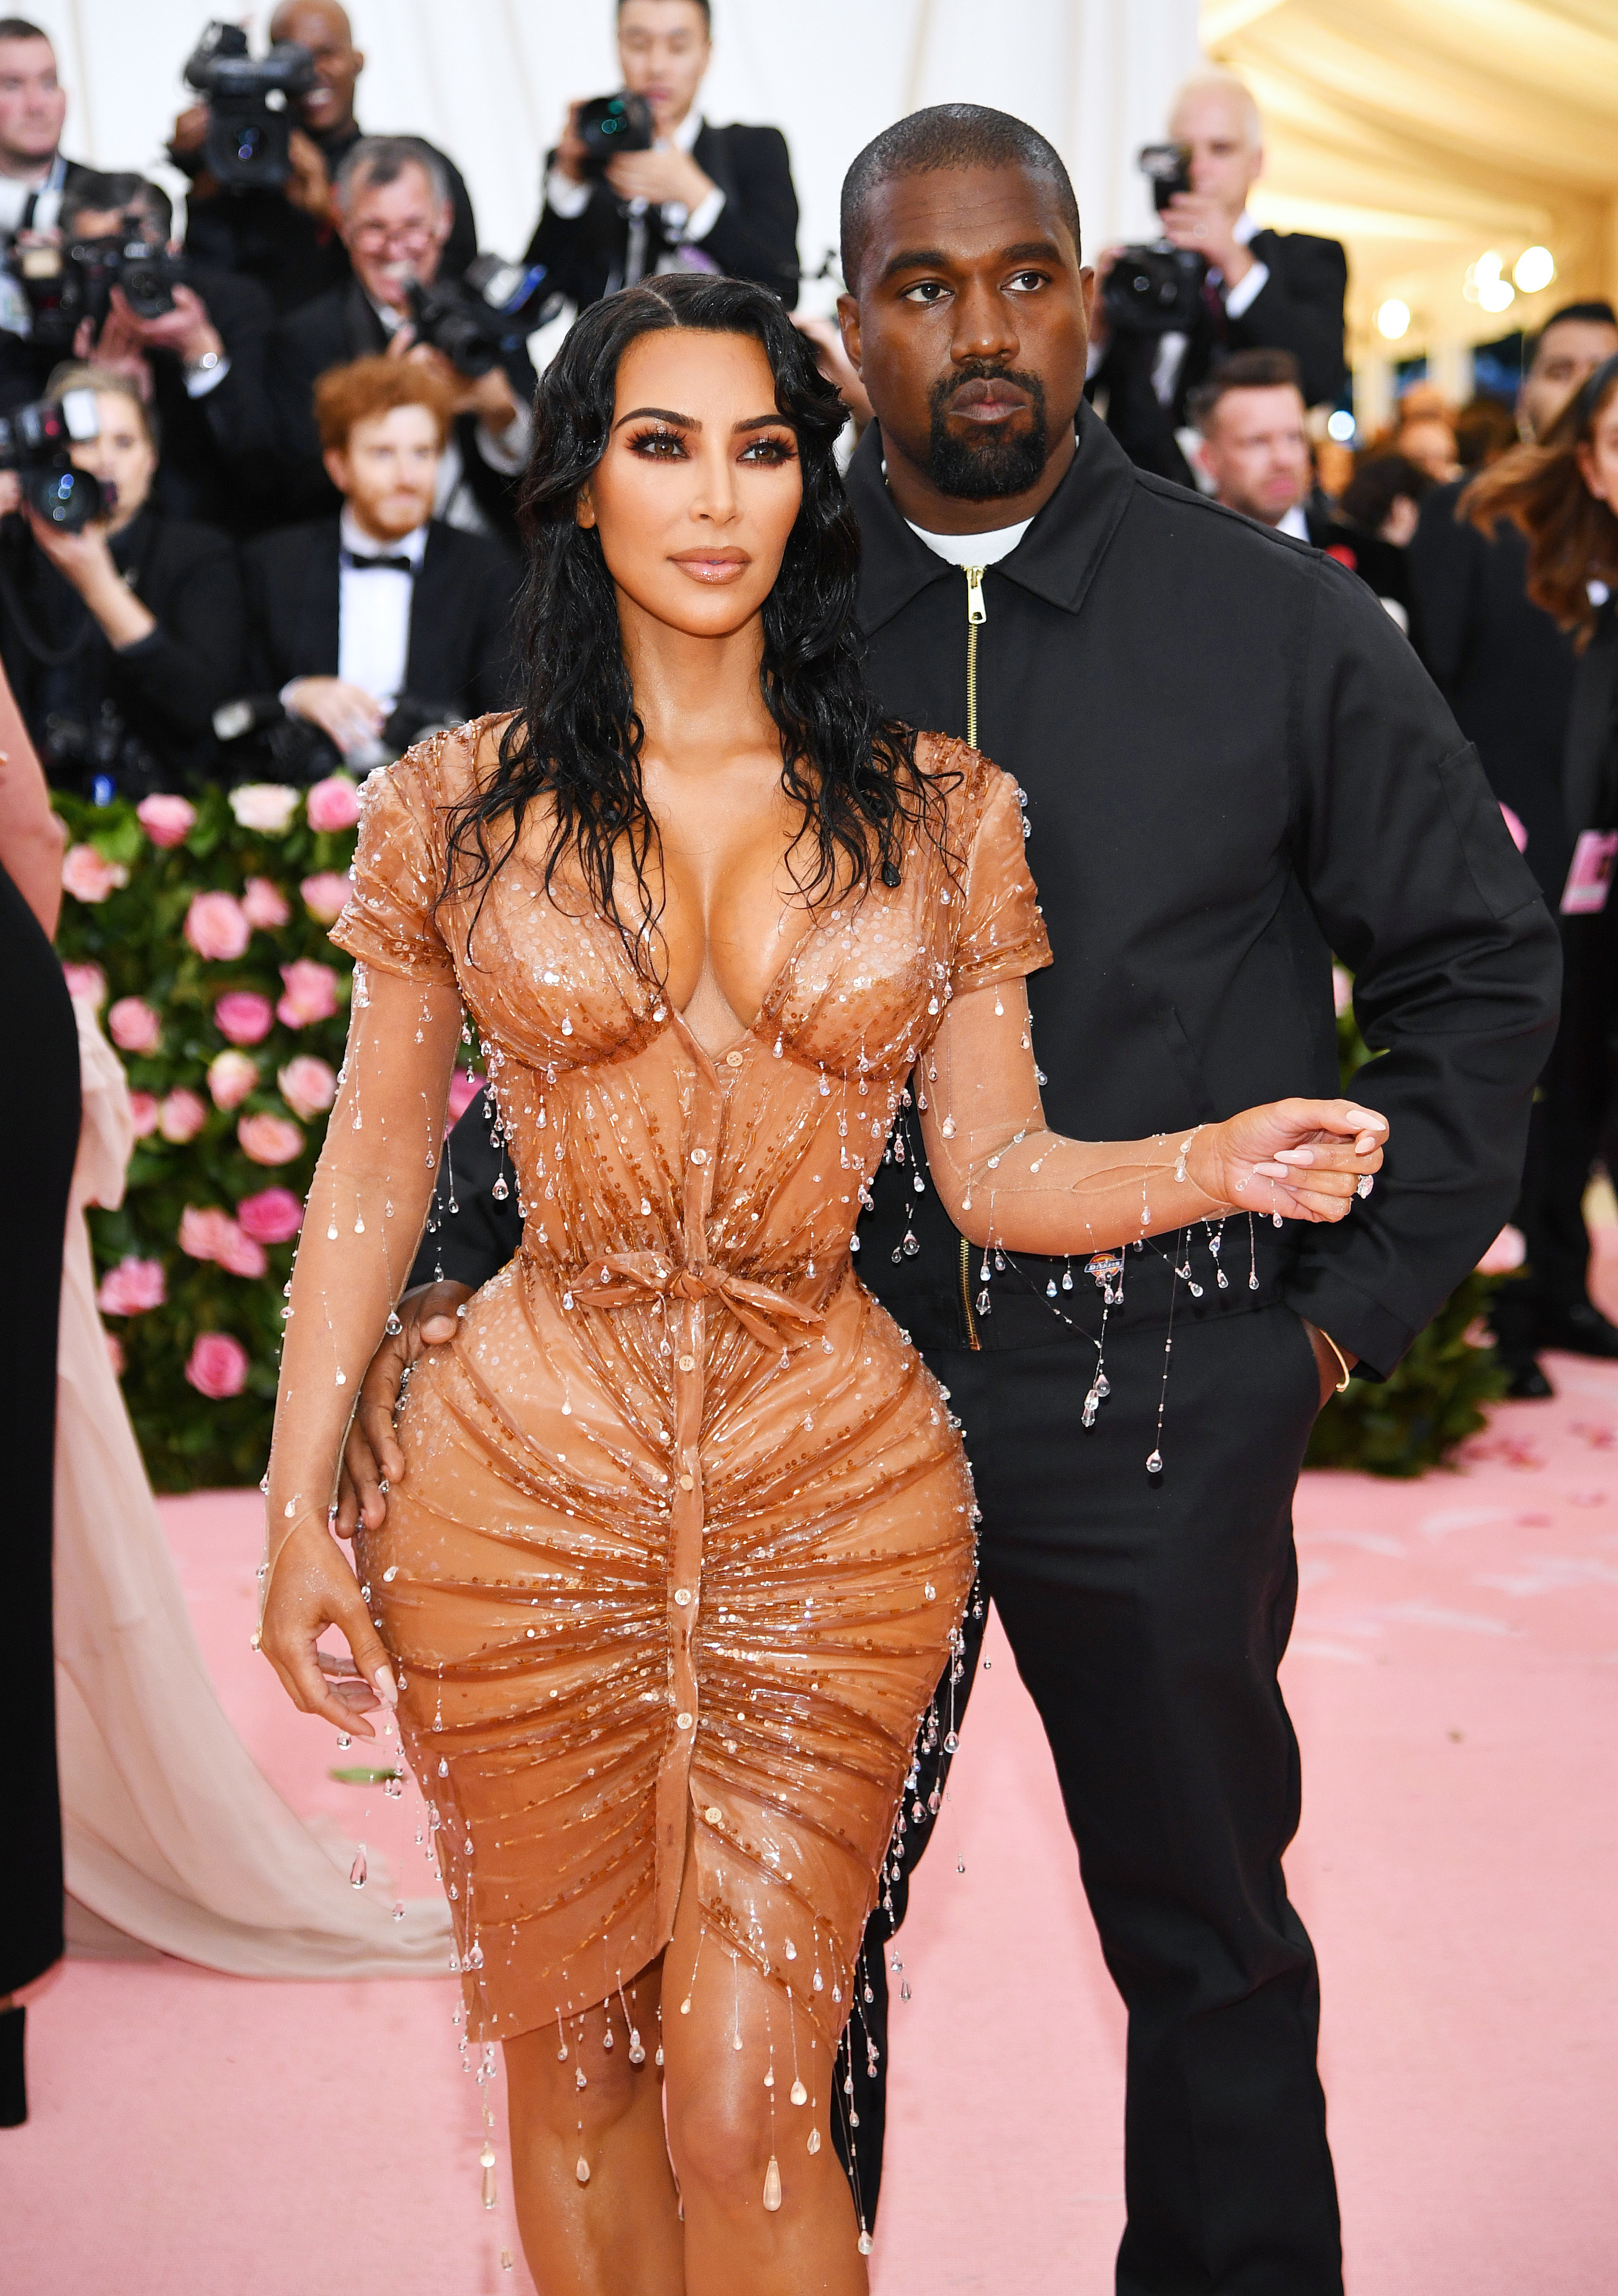 Kim Kardashian and Kanye West at the Met Gala